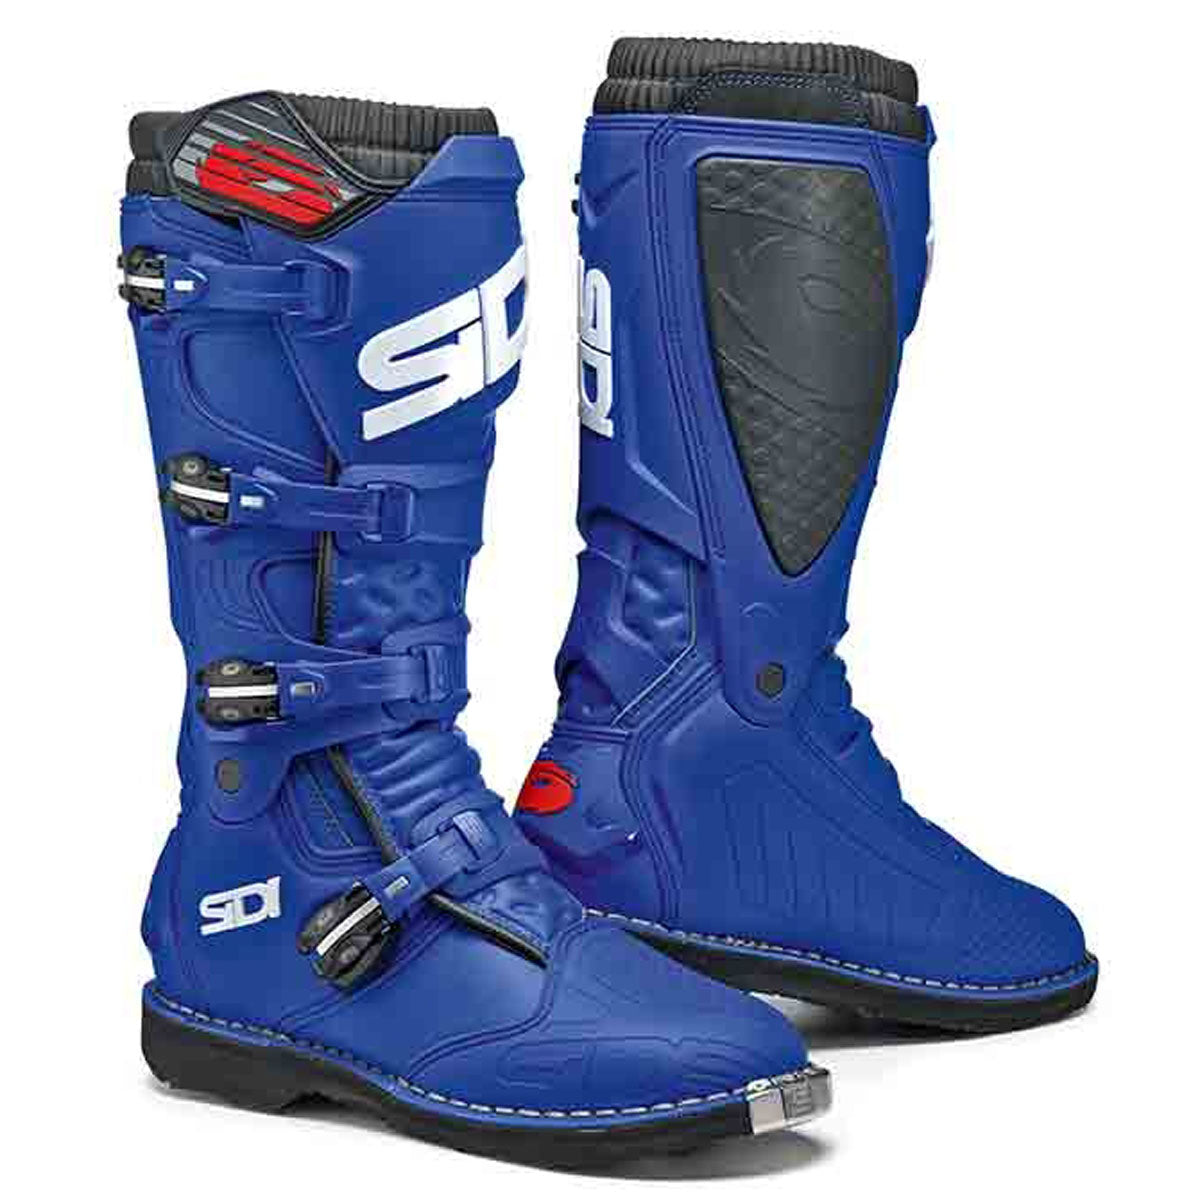 Sidi X-Power Boots - Blue